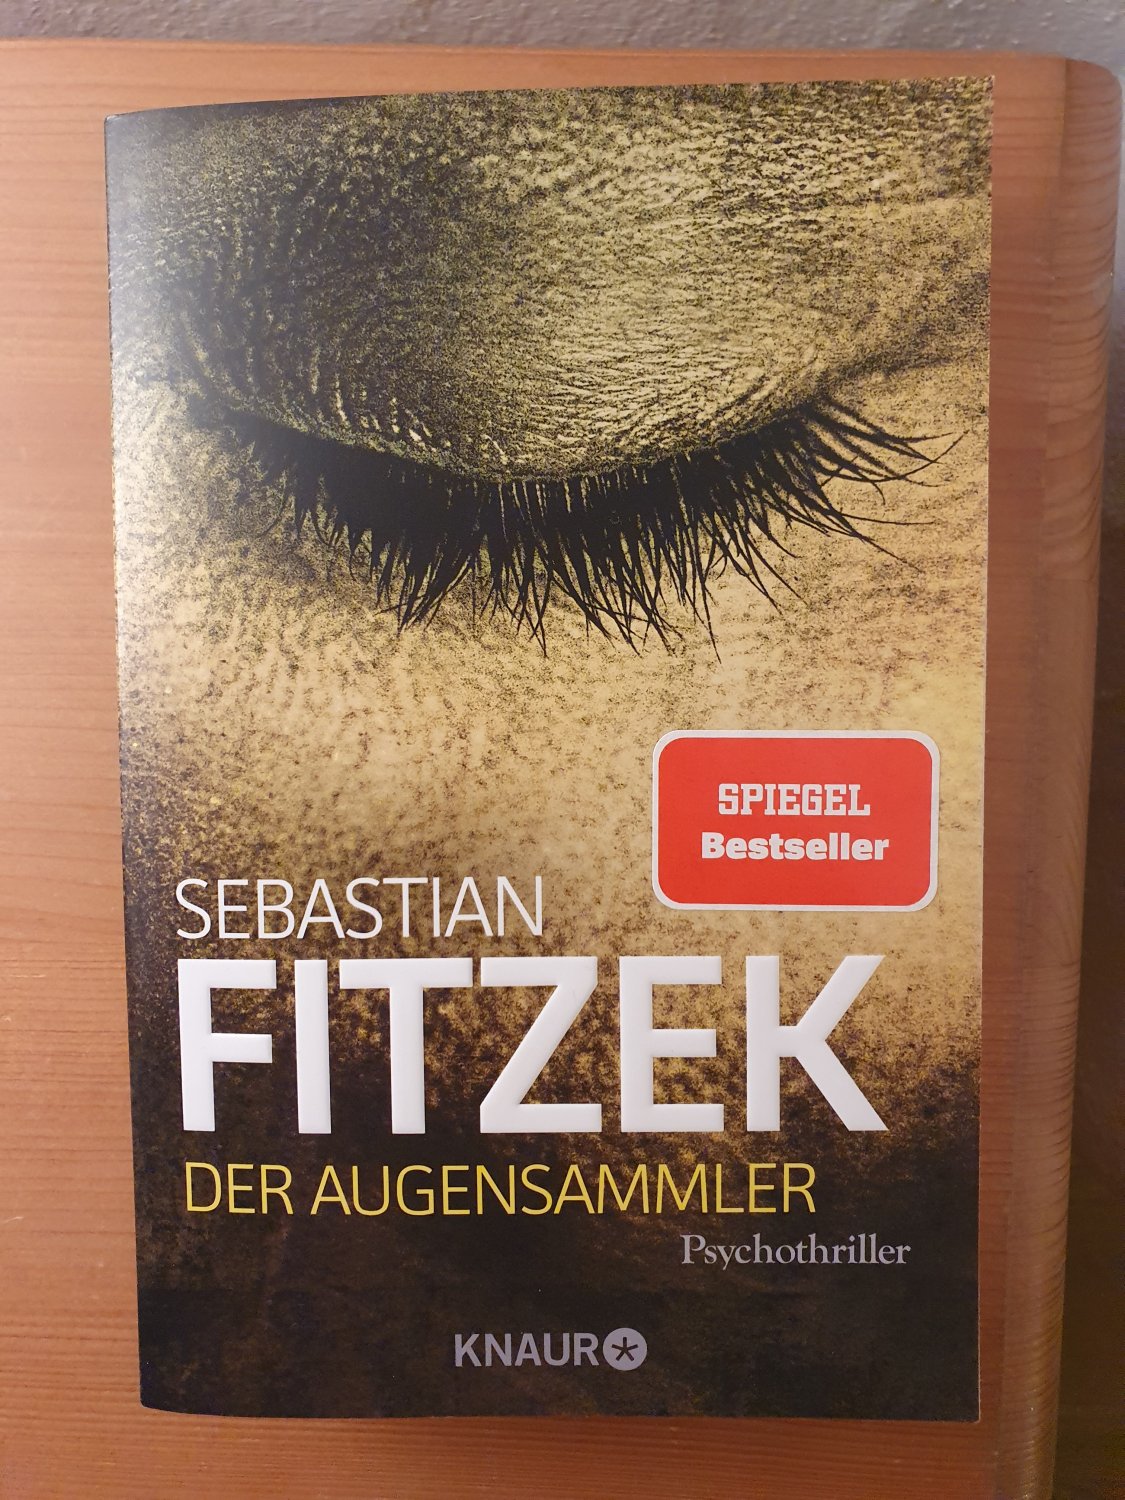 Der Augensammler - Psychothriller, SPIEGEL Bestseller